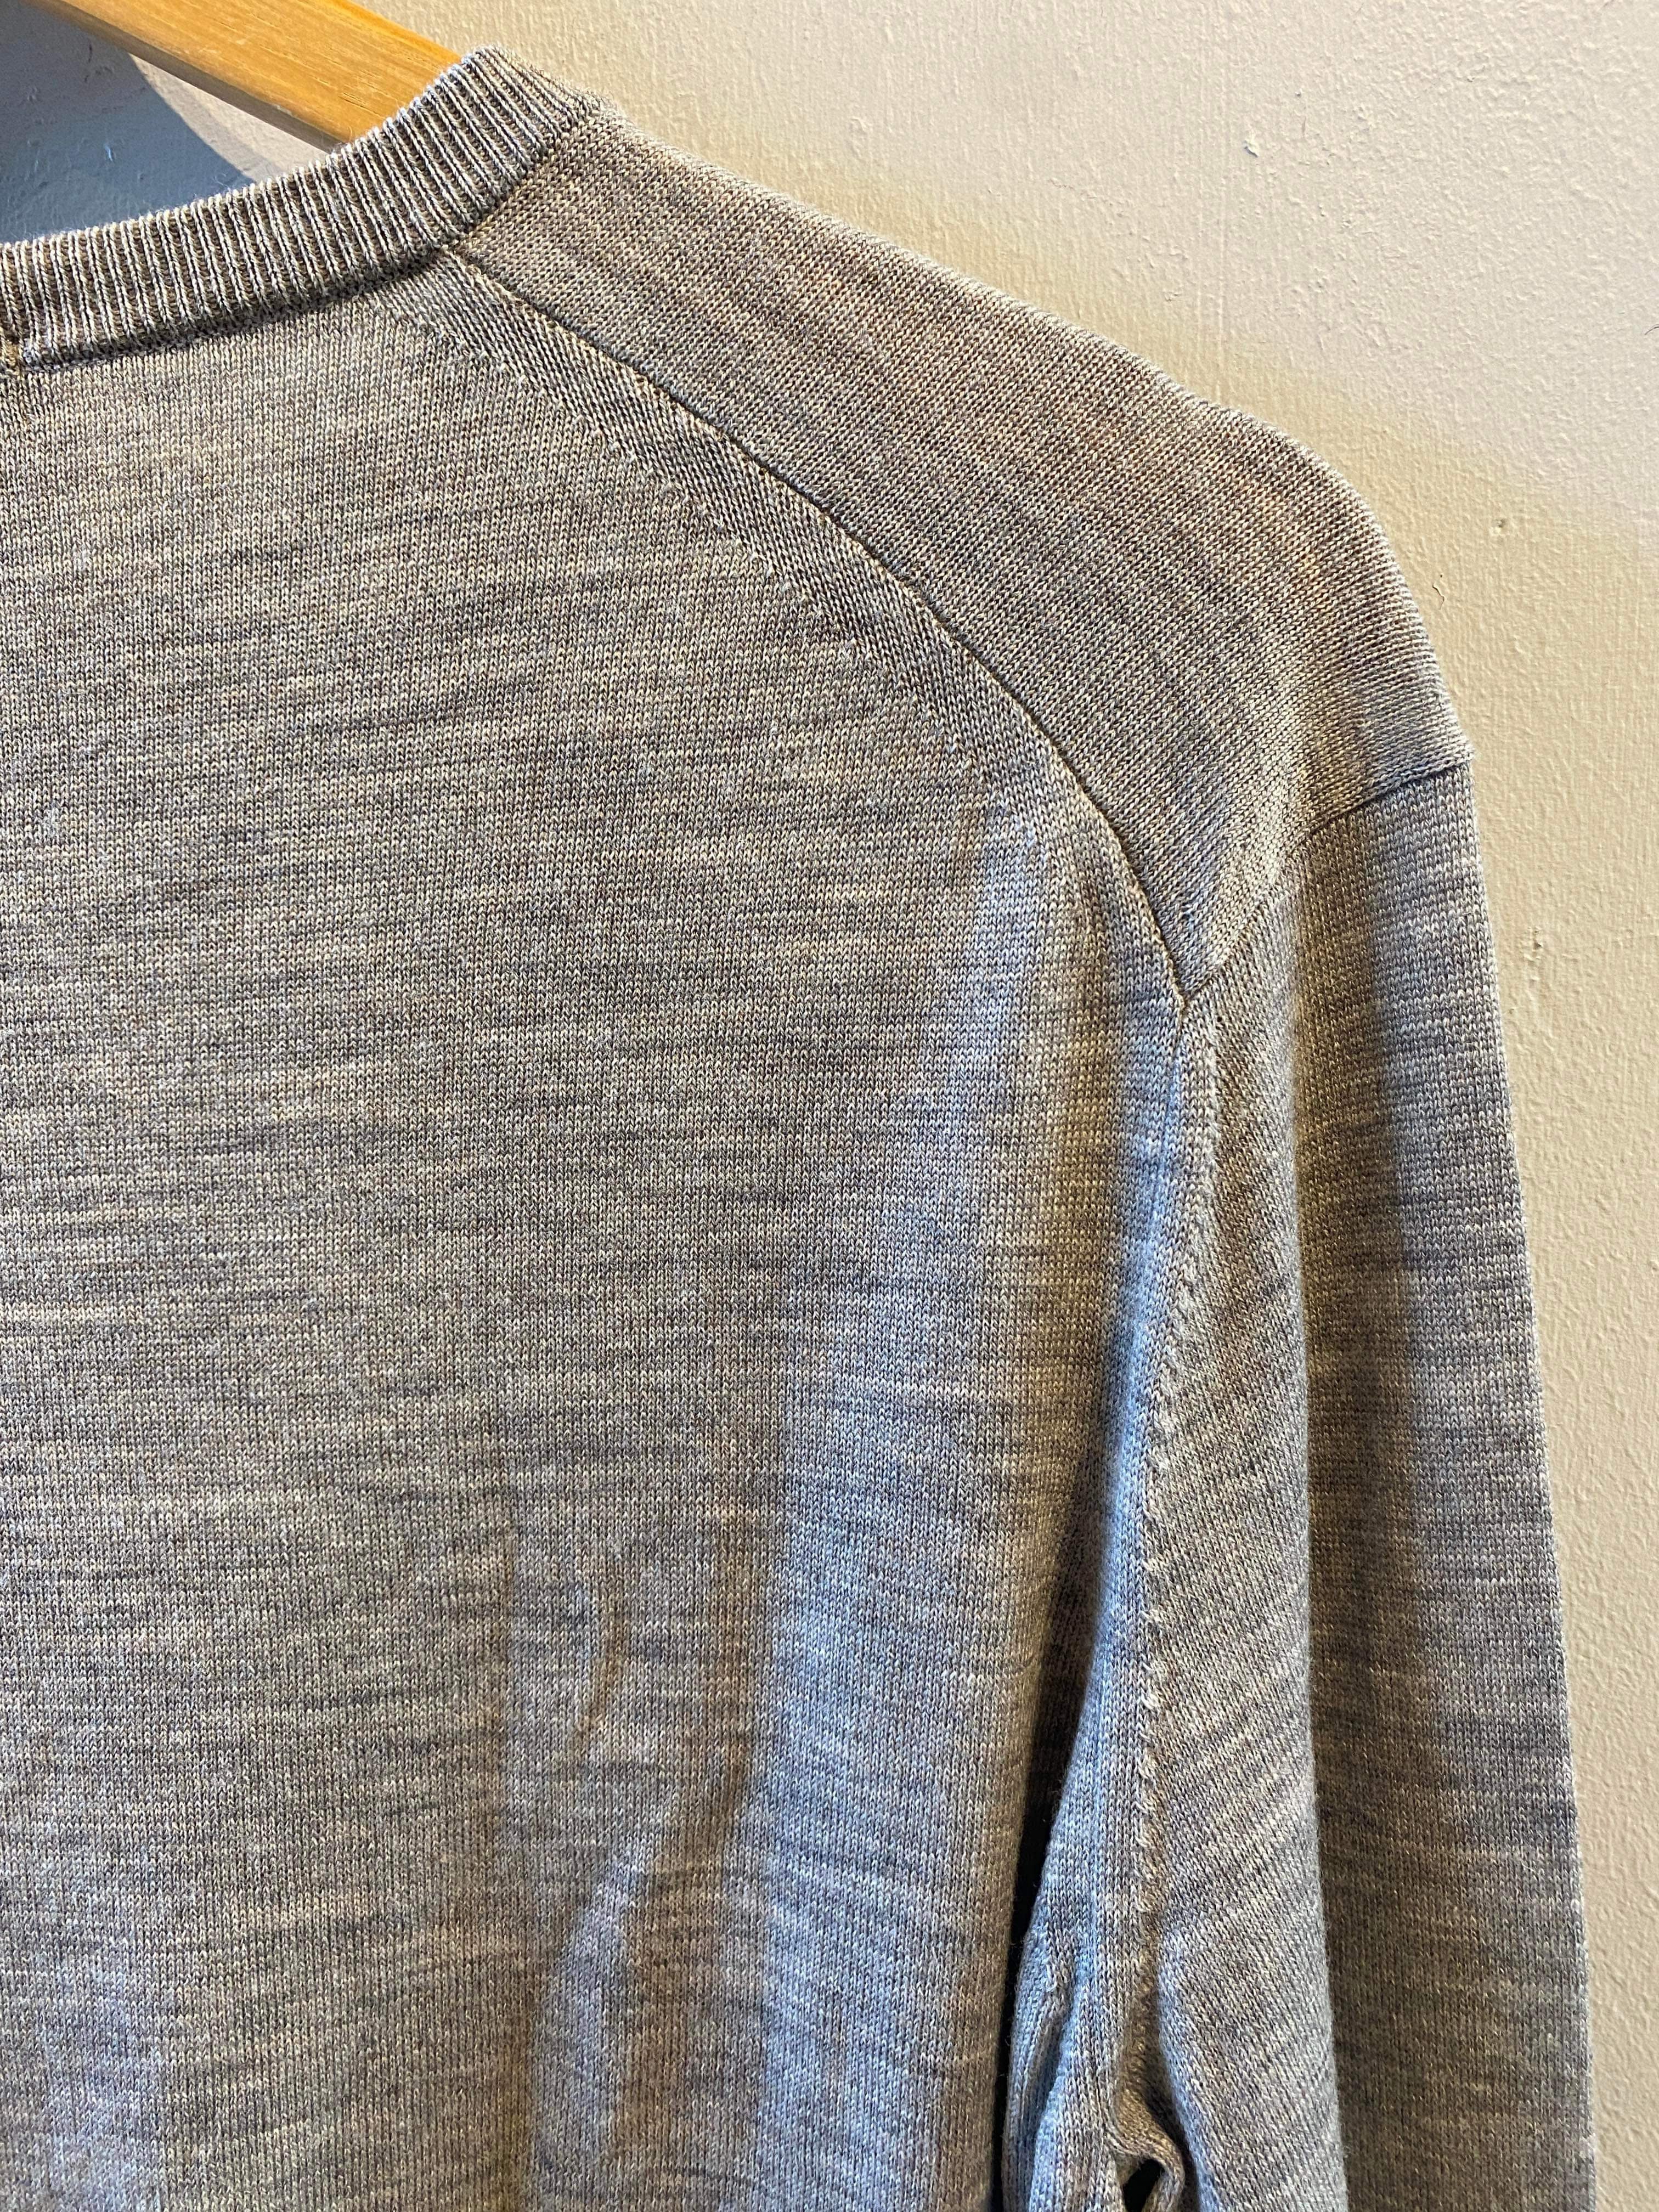 Uniqlo - Sweater - Size: XL